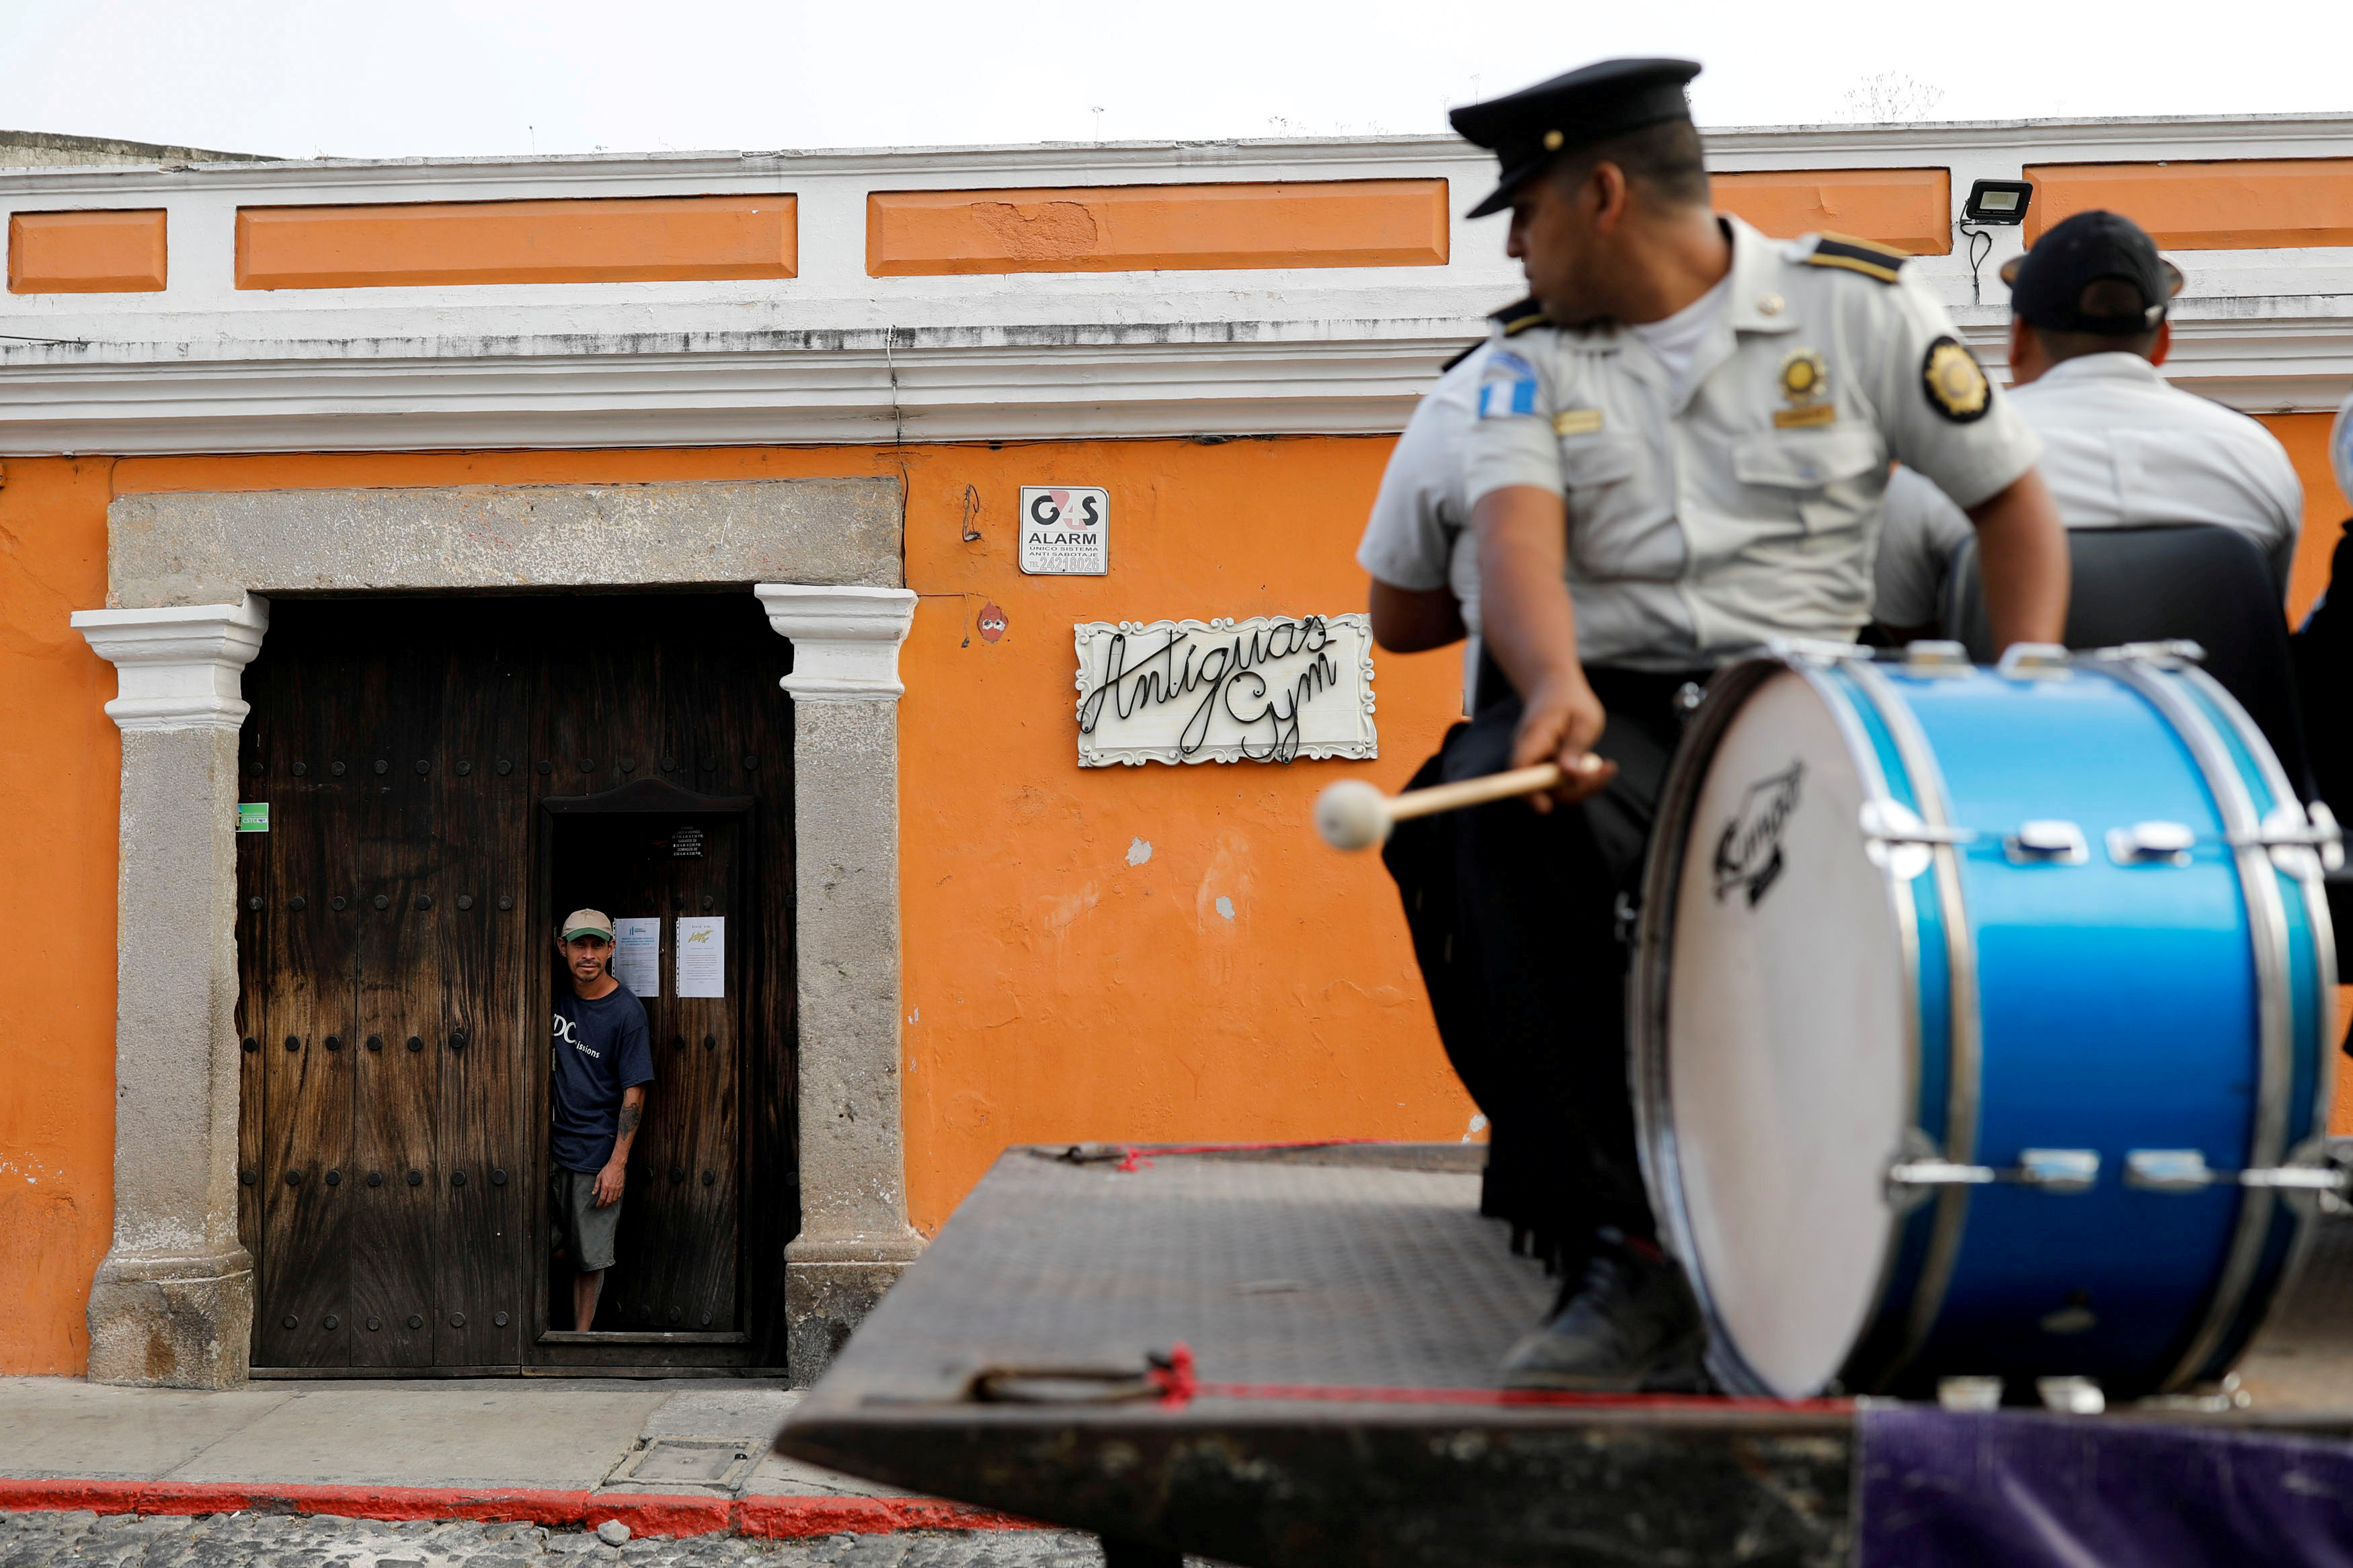 الفرقة الموسيقية التابعة للشرطة تقدم عروضا في الشارع في جواتيمالا سيتي  (4)